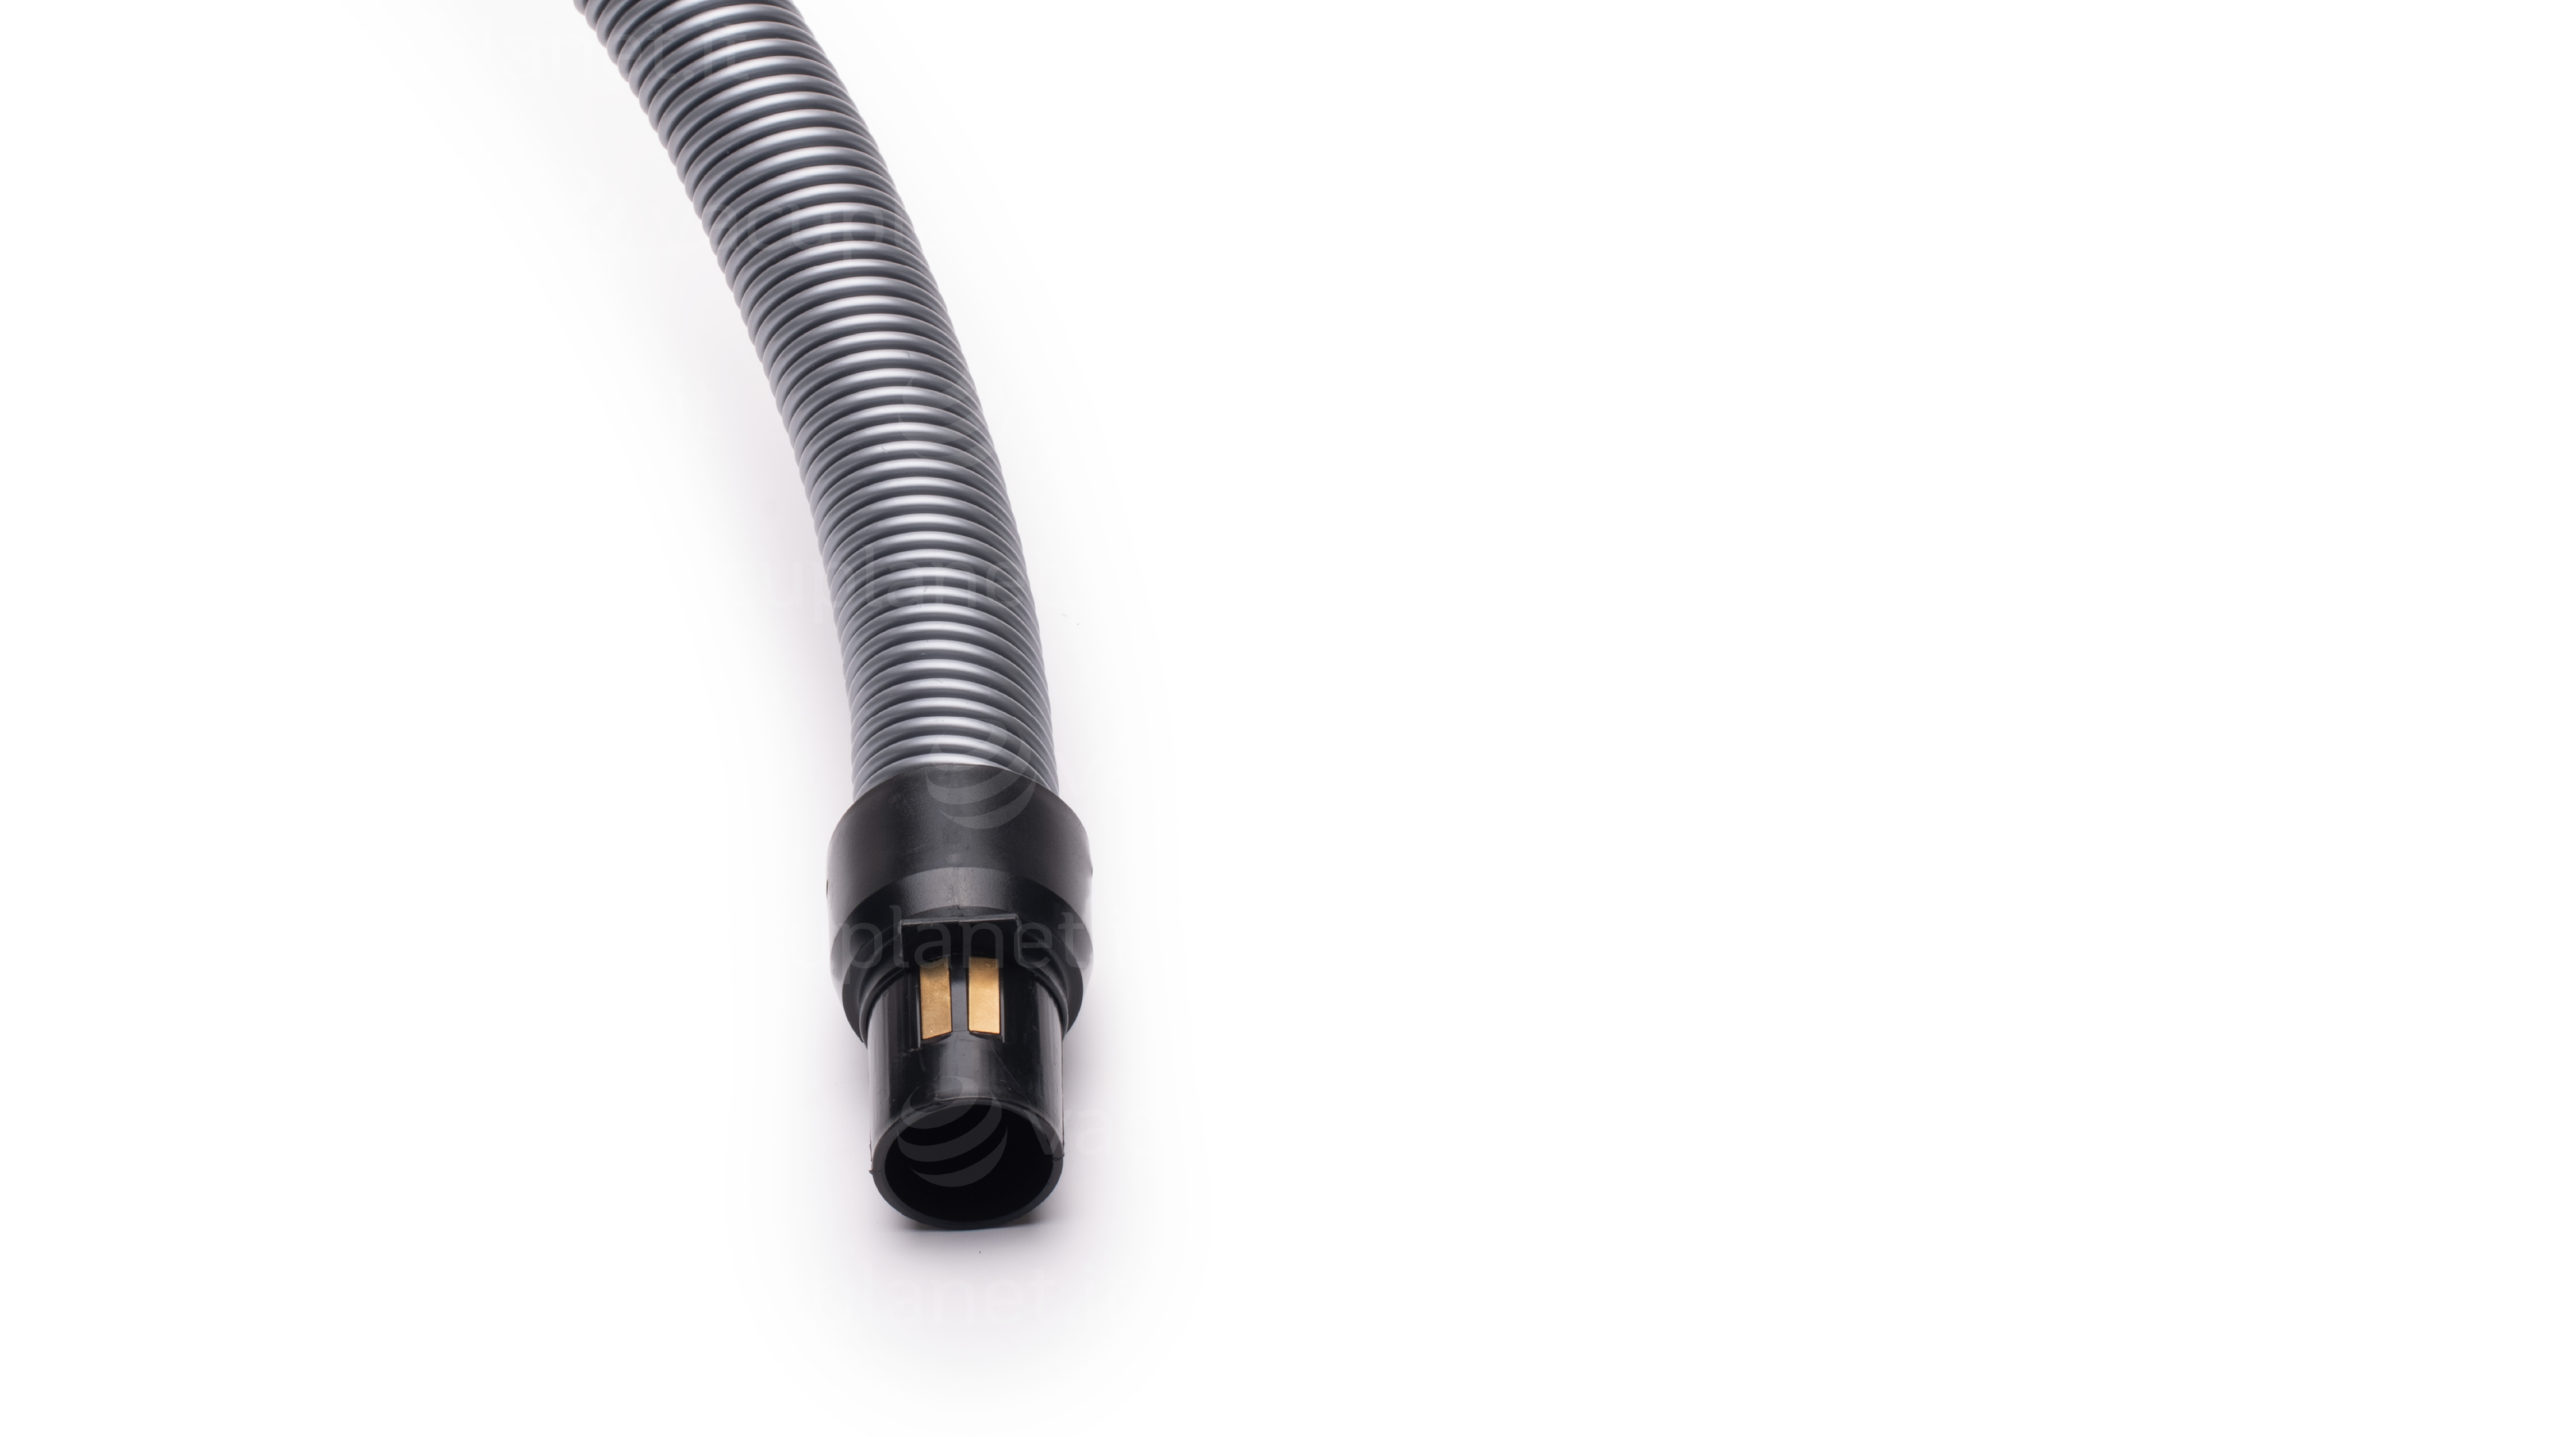 Raccordo tubo-presa con contatti del tubo flessibile con interruttore ON/OFF per impianto di aspirapolvere centralizzato